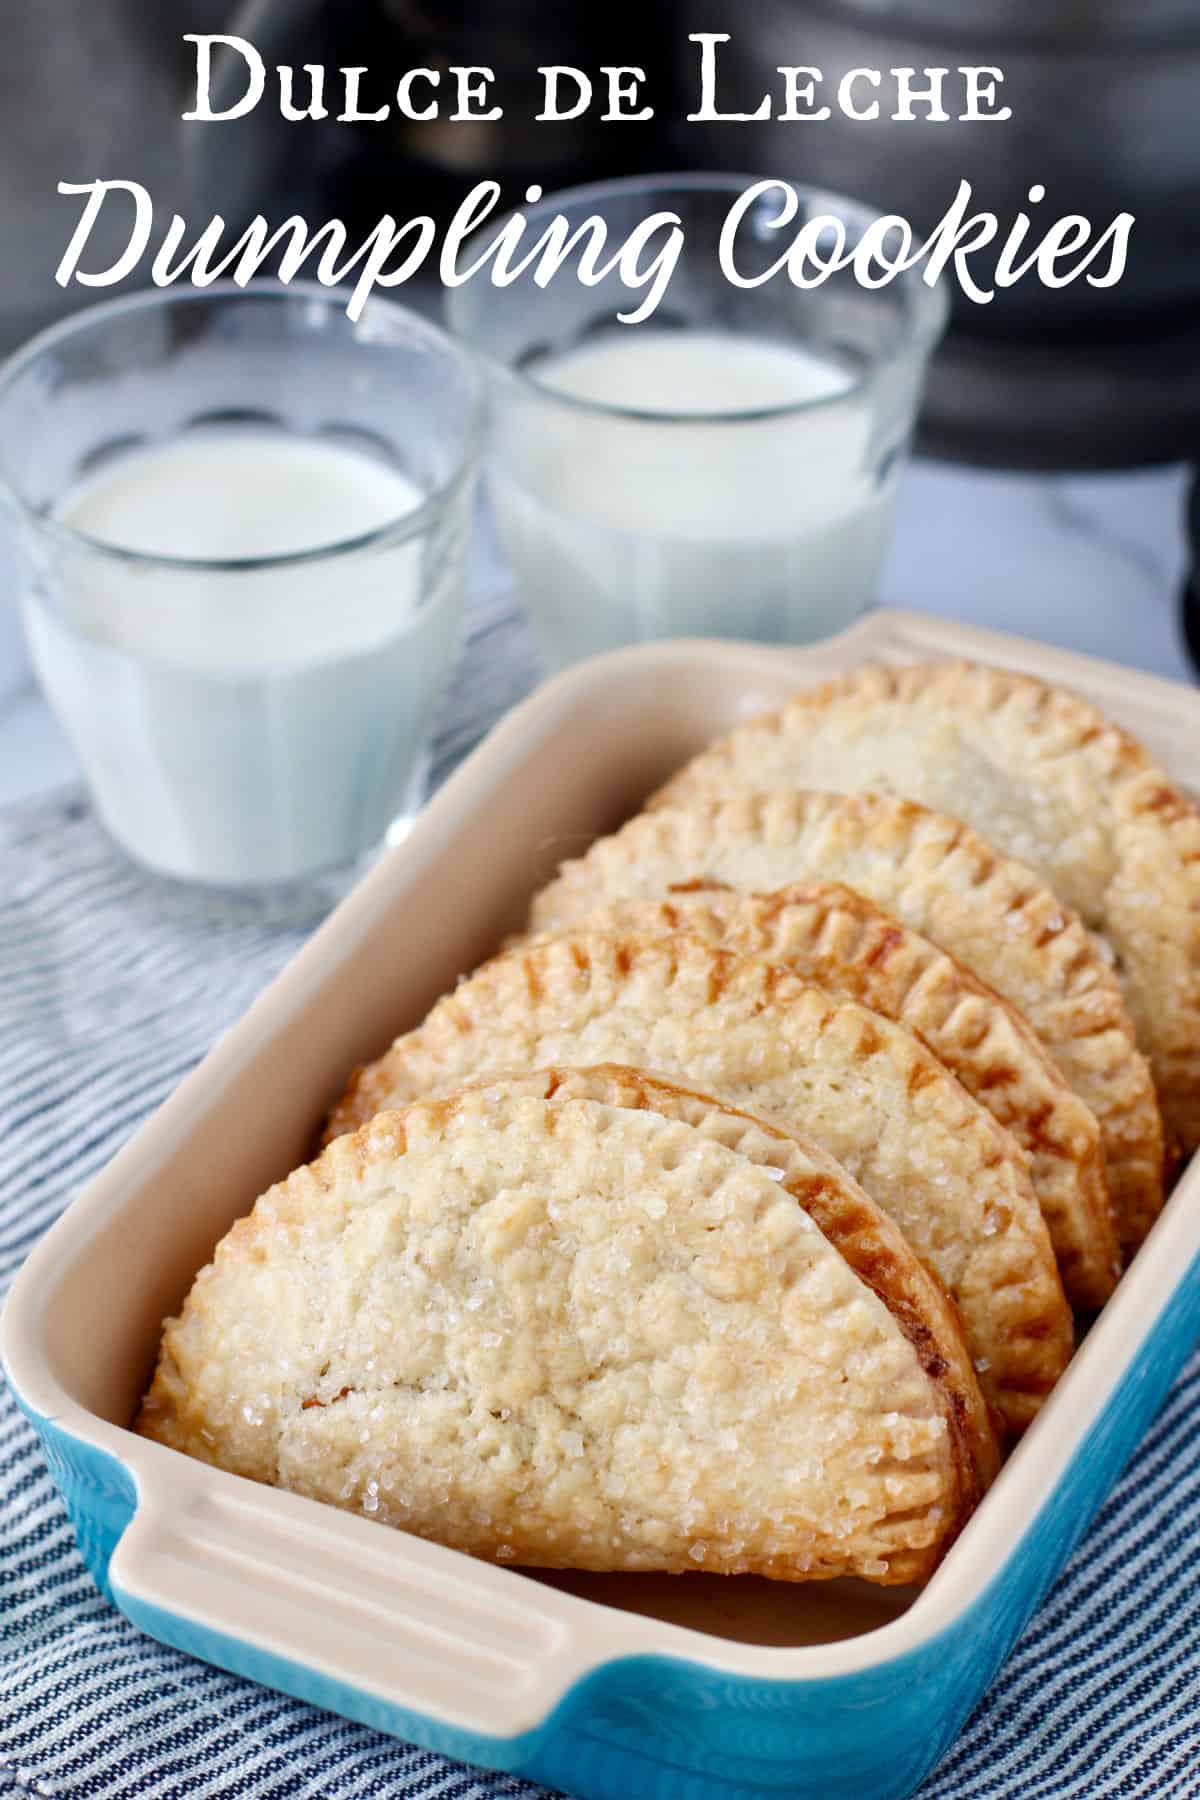 Dulce de Leche Dumpling Cookies | Karen's Kitchen Stories